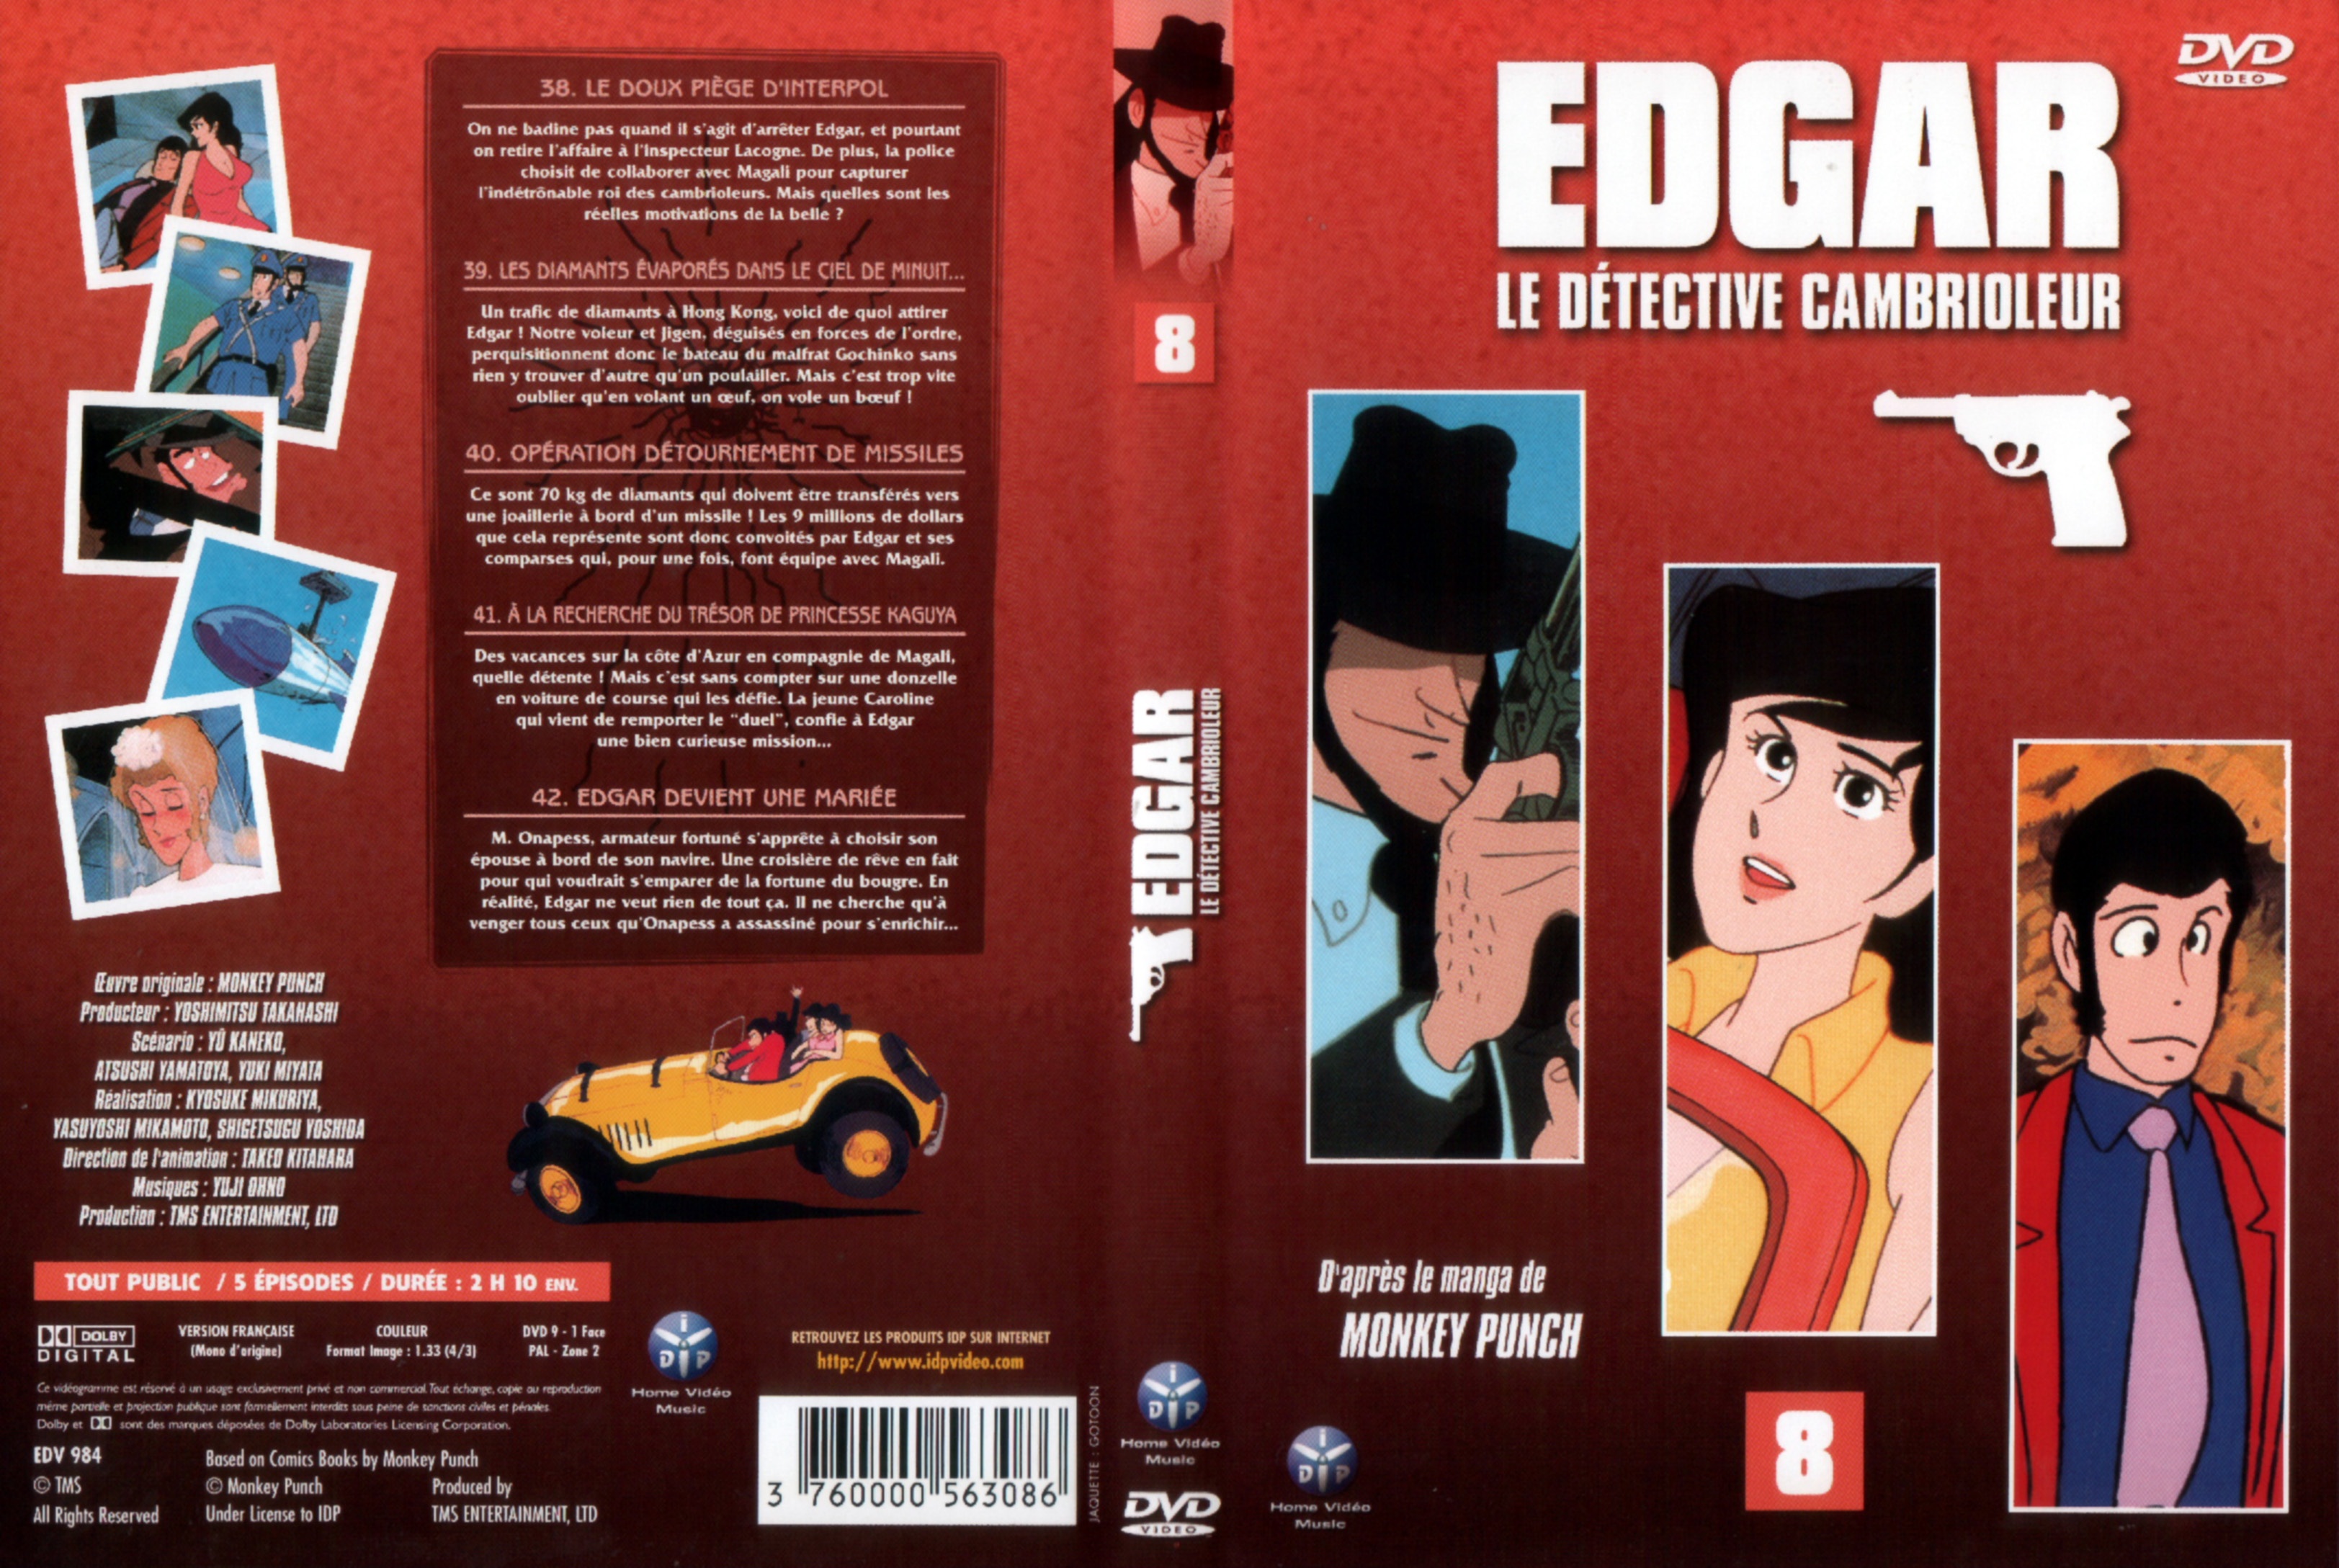 Jaquette DVD Edgar le detective cambrioleur DVD 08